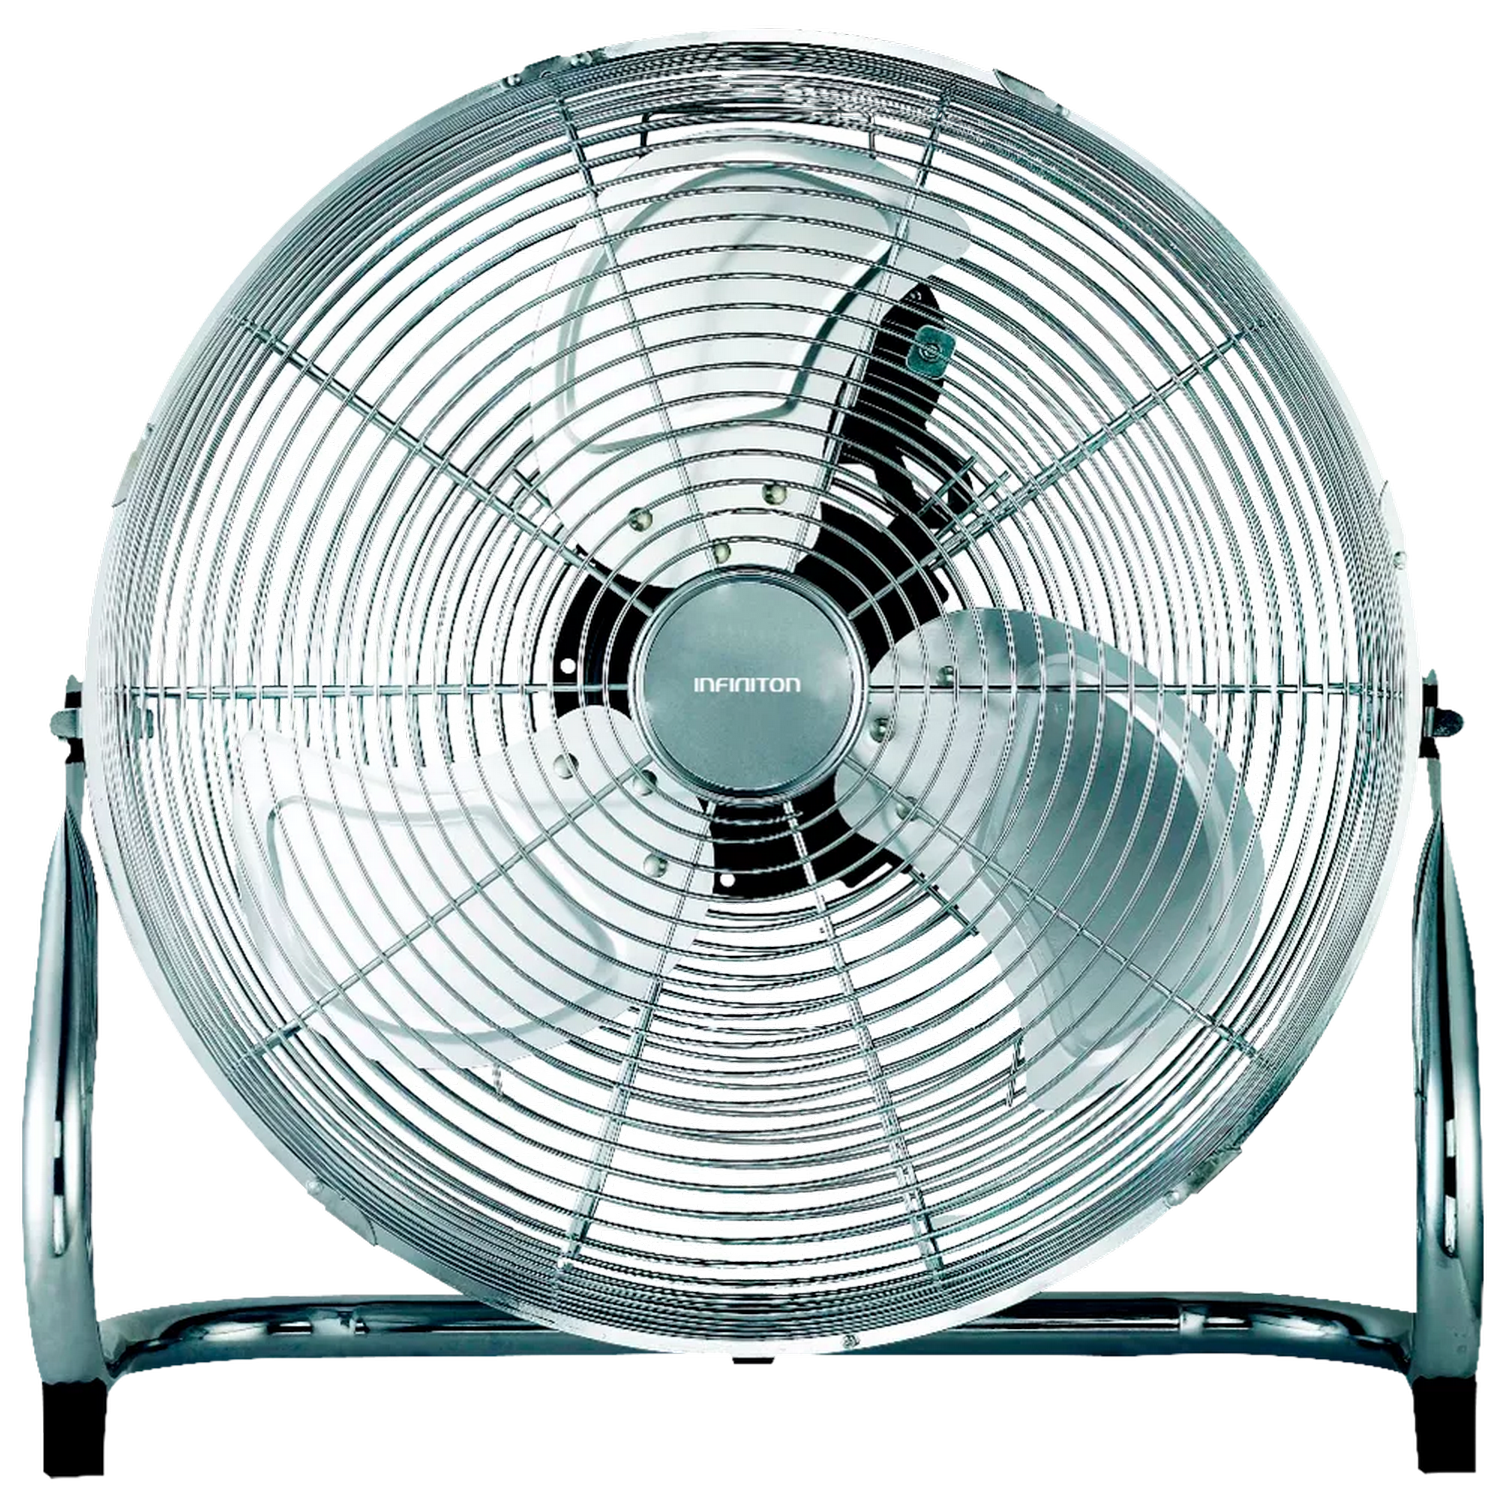 Infiniton Ventilador Industrial if16sp – 3 velocidades aspas 40cm de diametro rejilla seguridad silencioso if16ps suelo 60w 40 90º